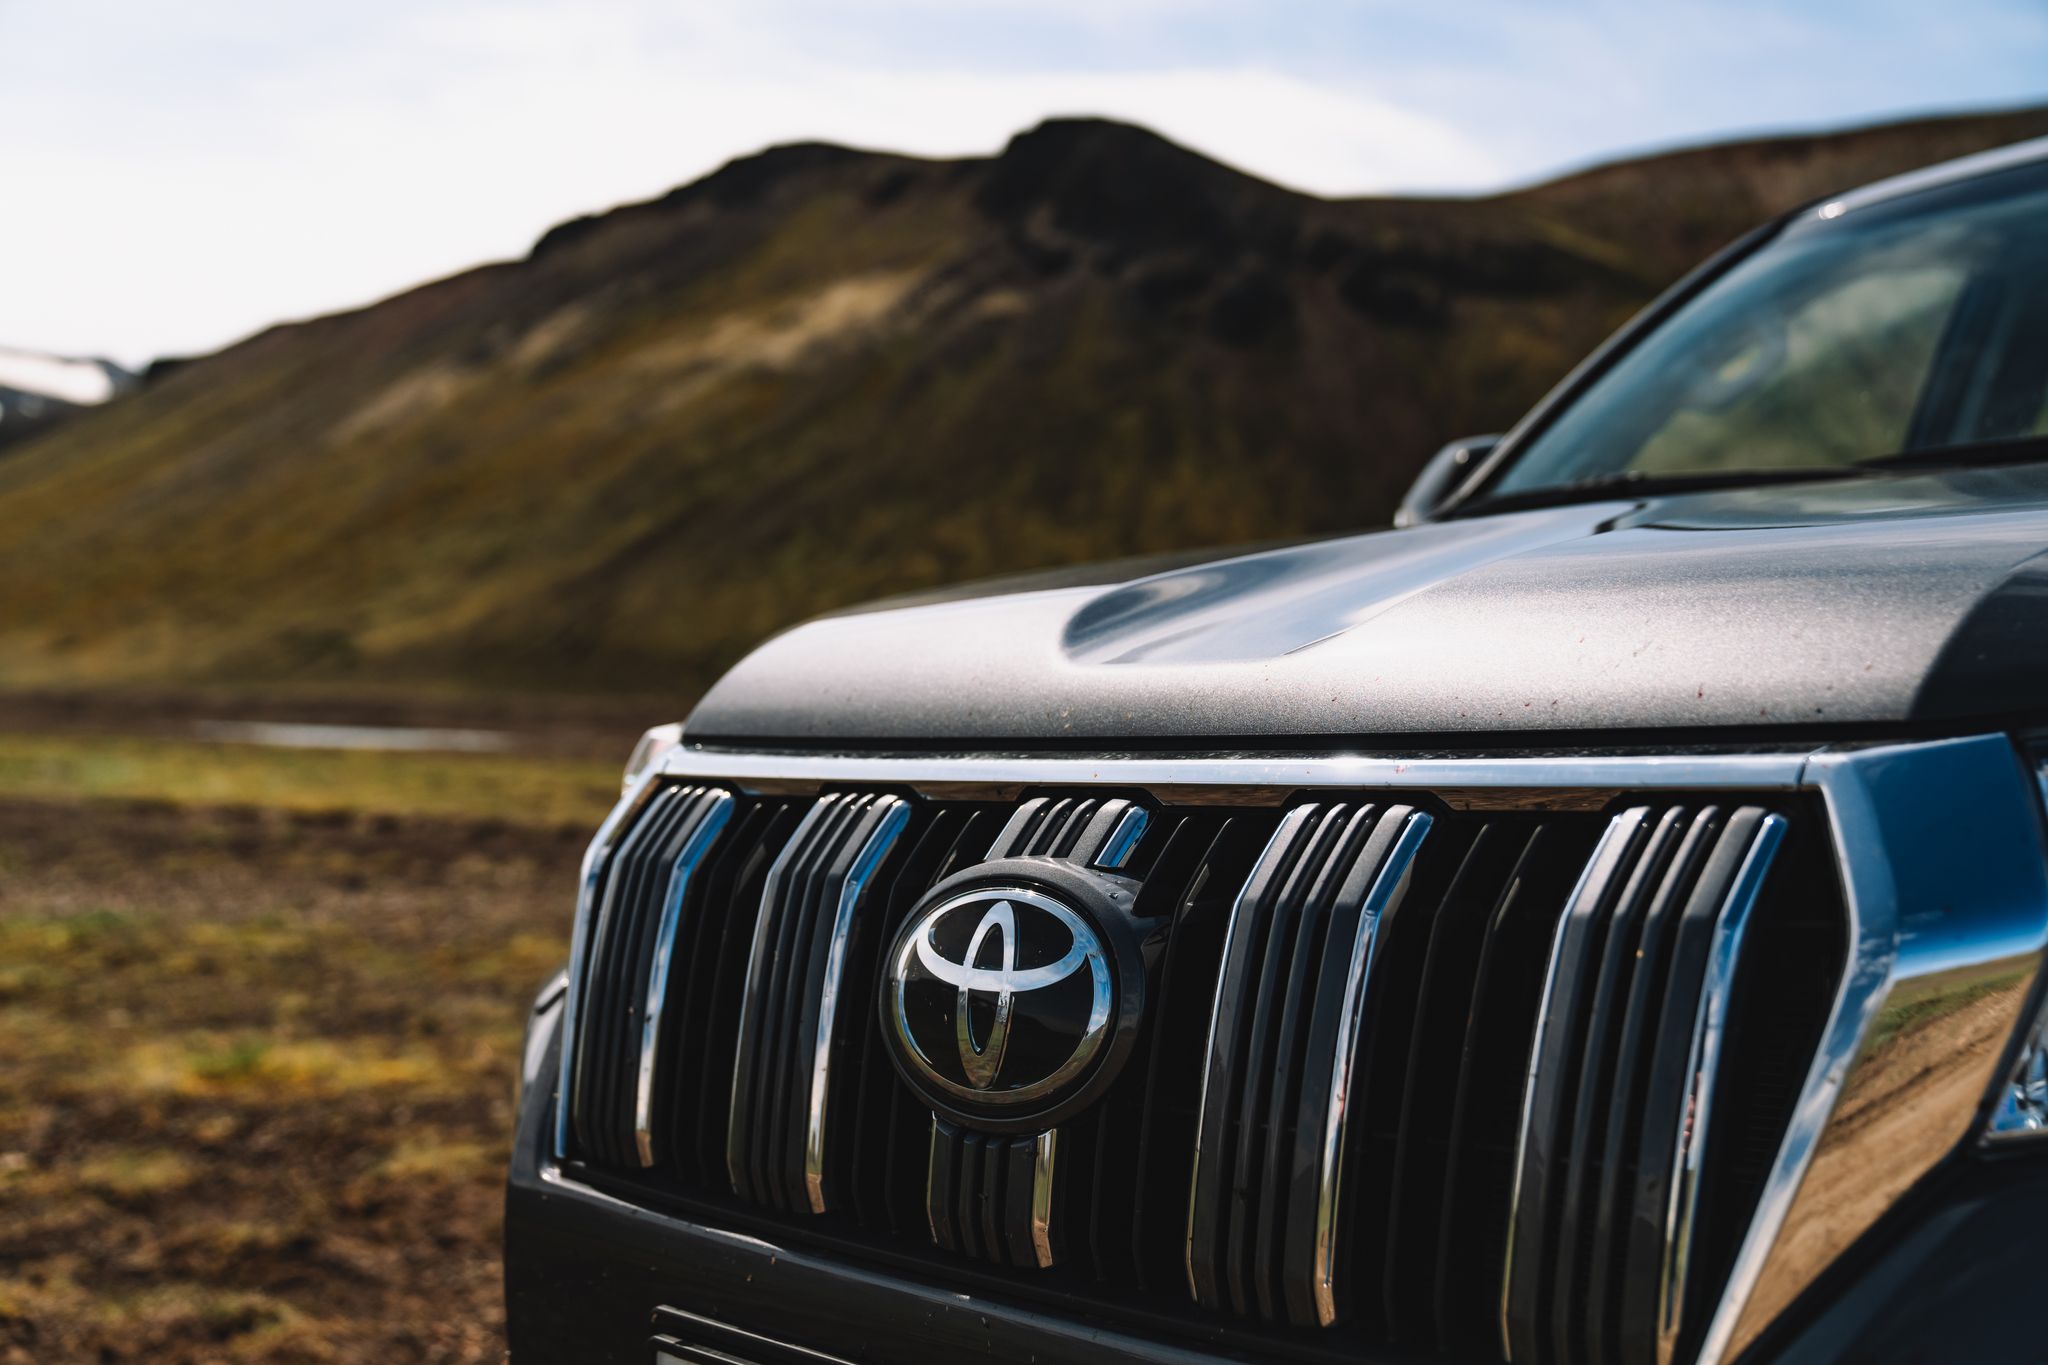 Le logo Toyota est affiché bien en vue sur une voiture de location de Go Car Rental, dans le cadre magnifique des paysages accidentés de l’Islande.